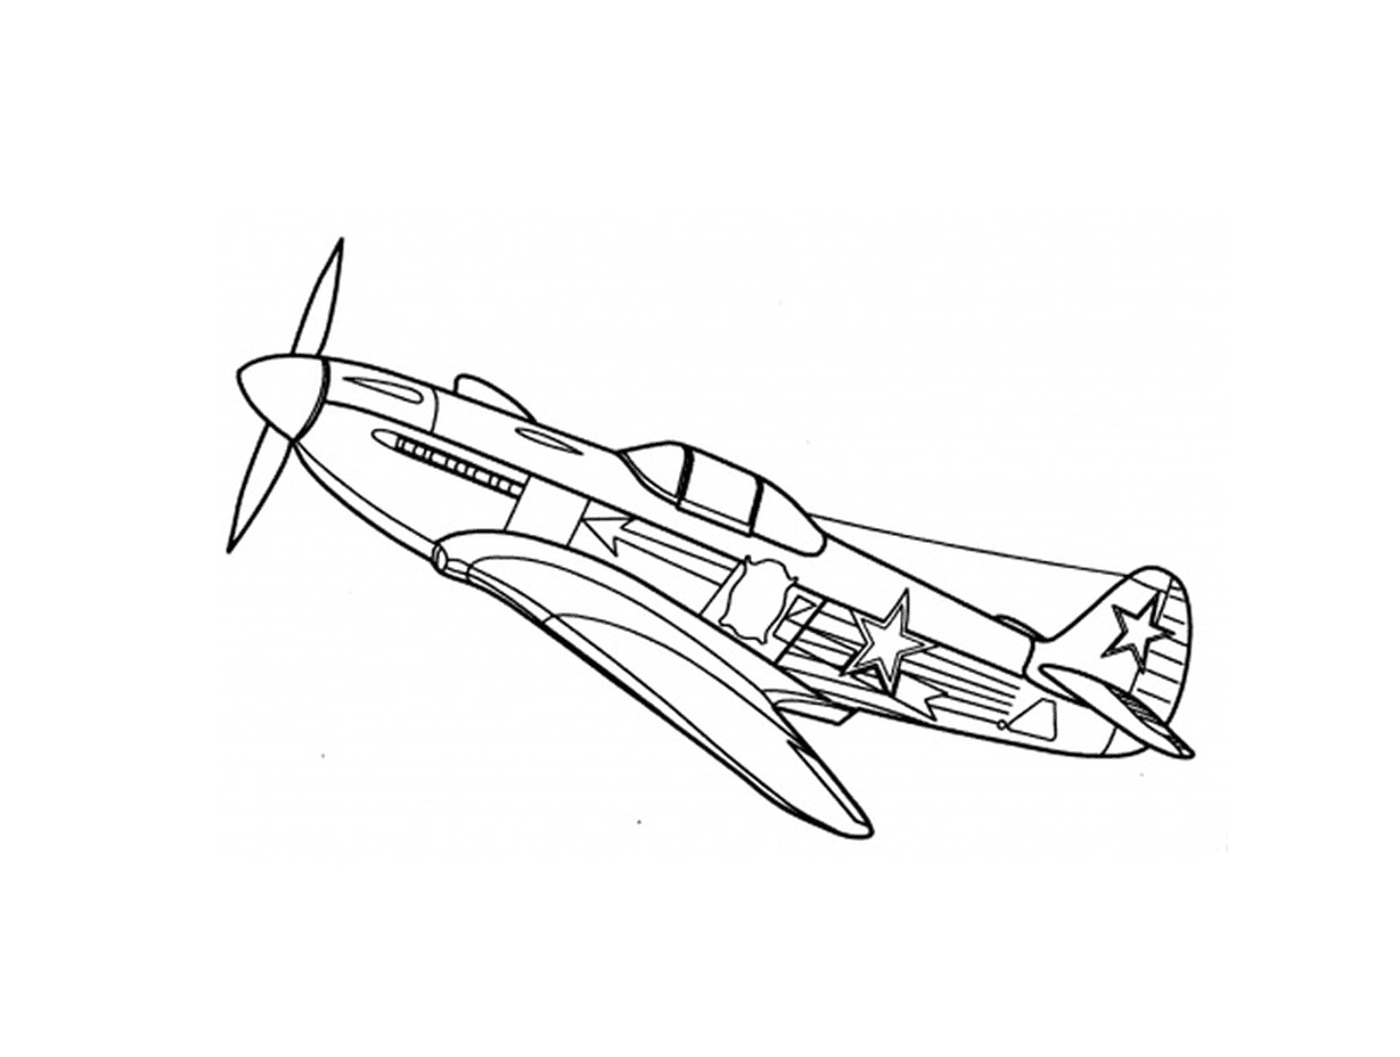  Нарисован боевой самолет 